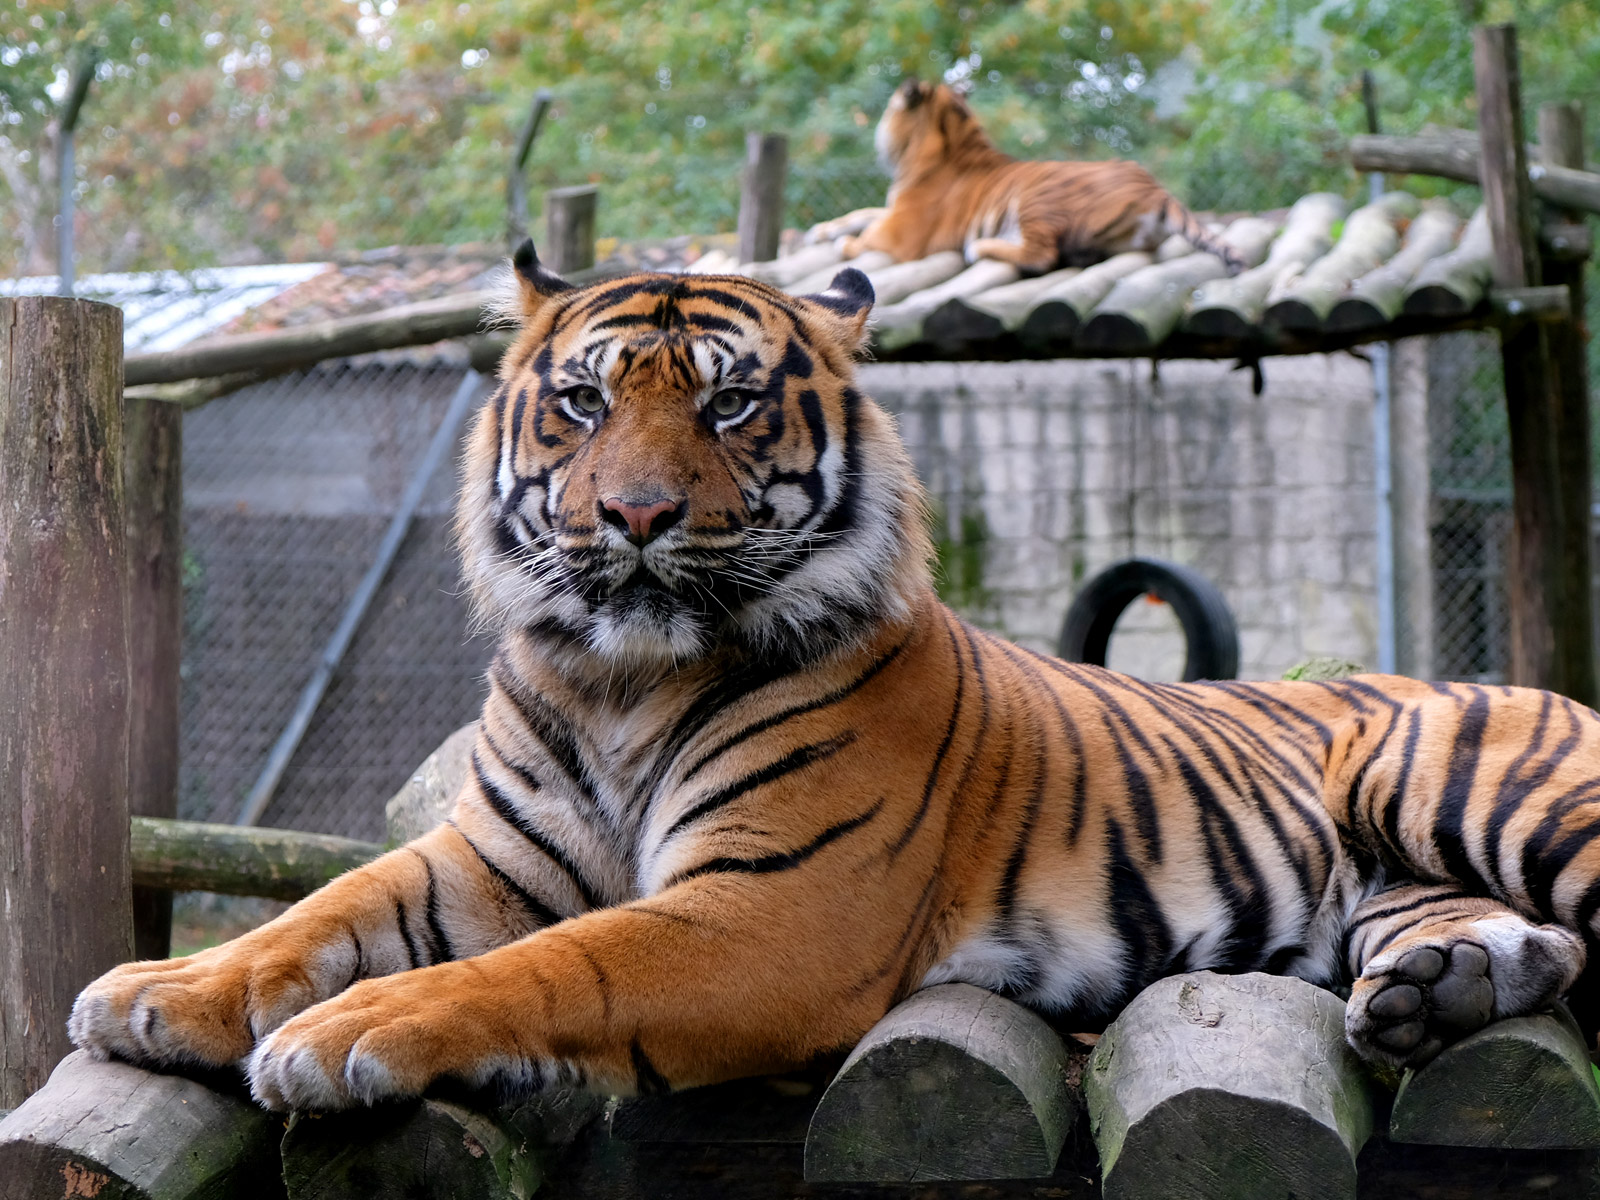 Le tigre du zoo de La boissière-du-doré, situé près de Nantes, en Loire-Atlantique